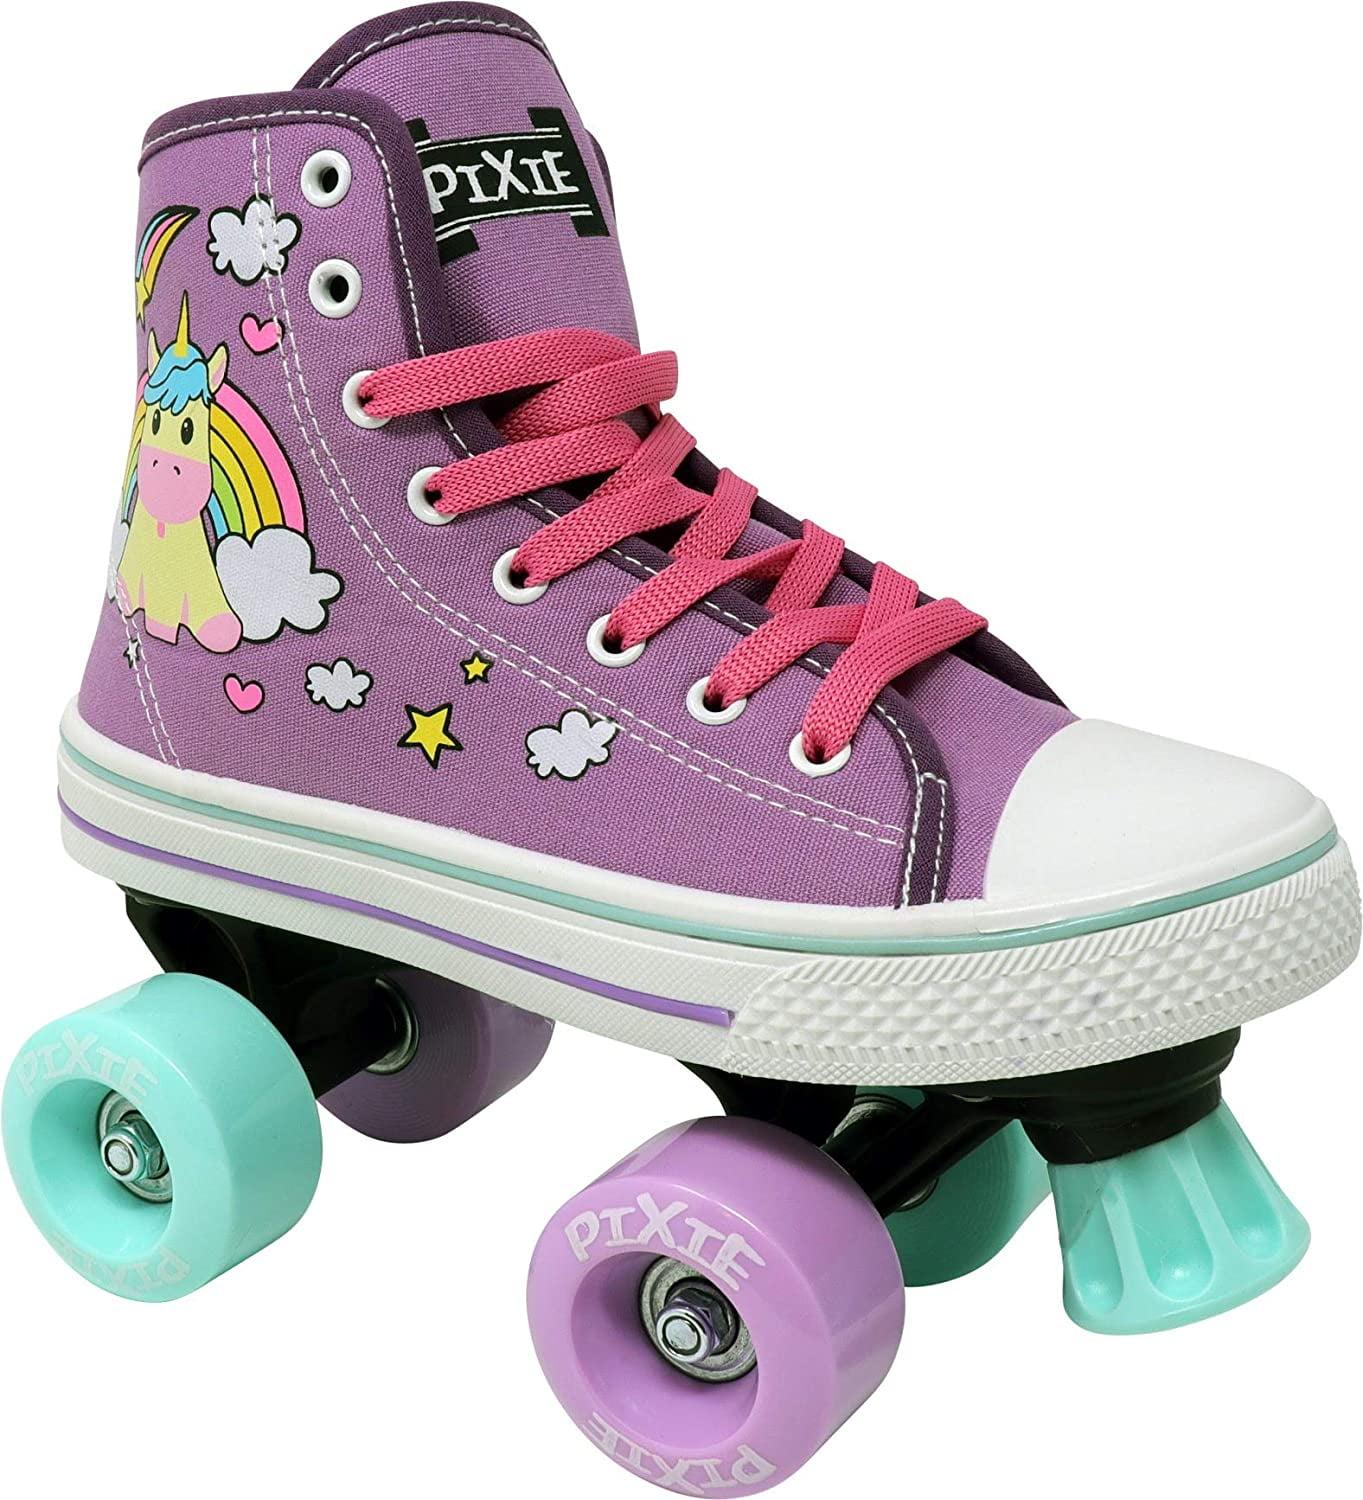 Lenexa Pixie Kids Roller Skates Sizes J10 Kids 4